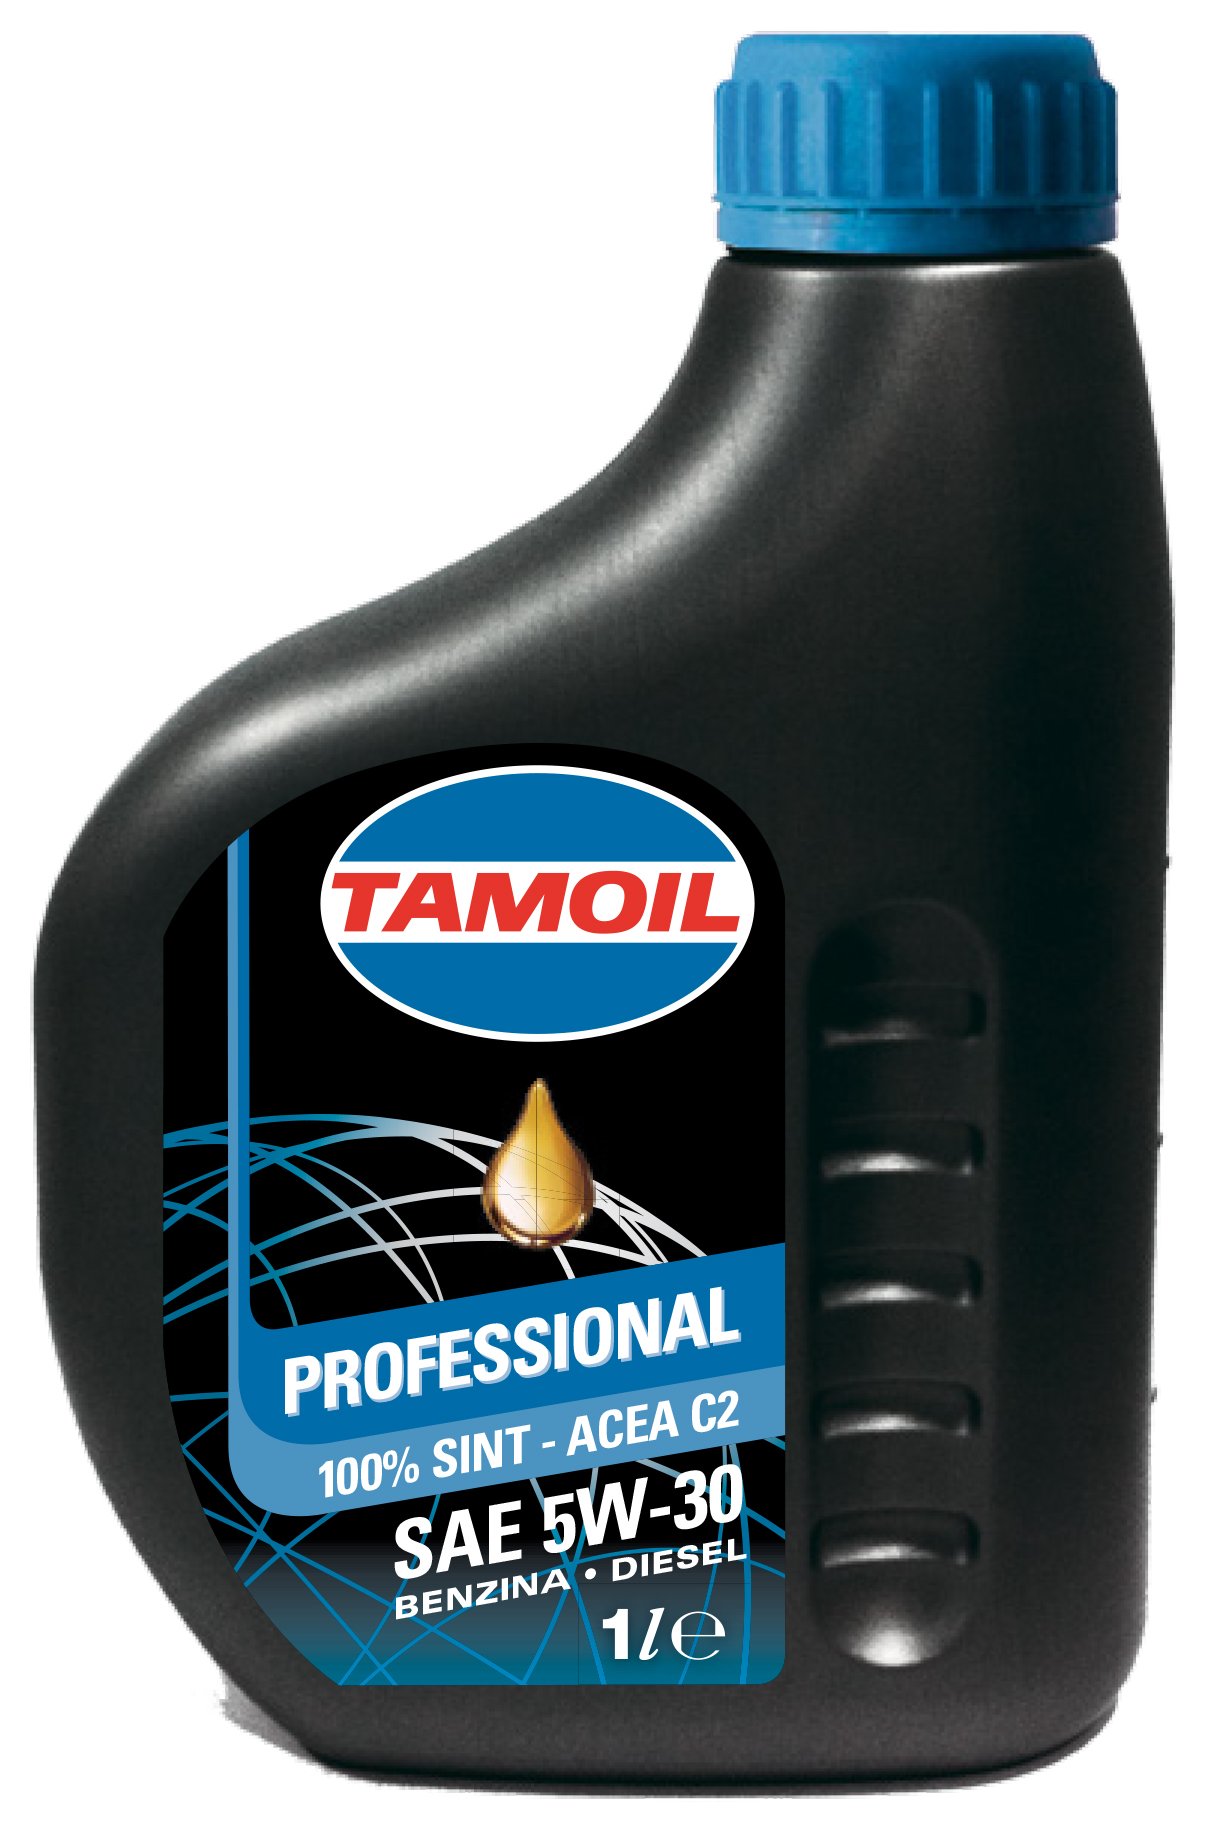 Tamoil 100% Sint SAE 5W-30 C2 olio per motore 1 L Ideali alla